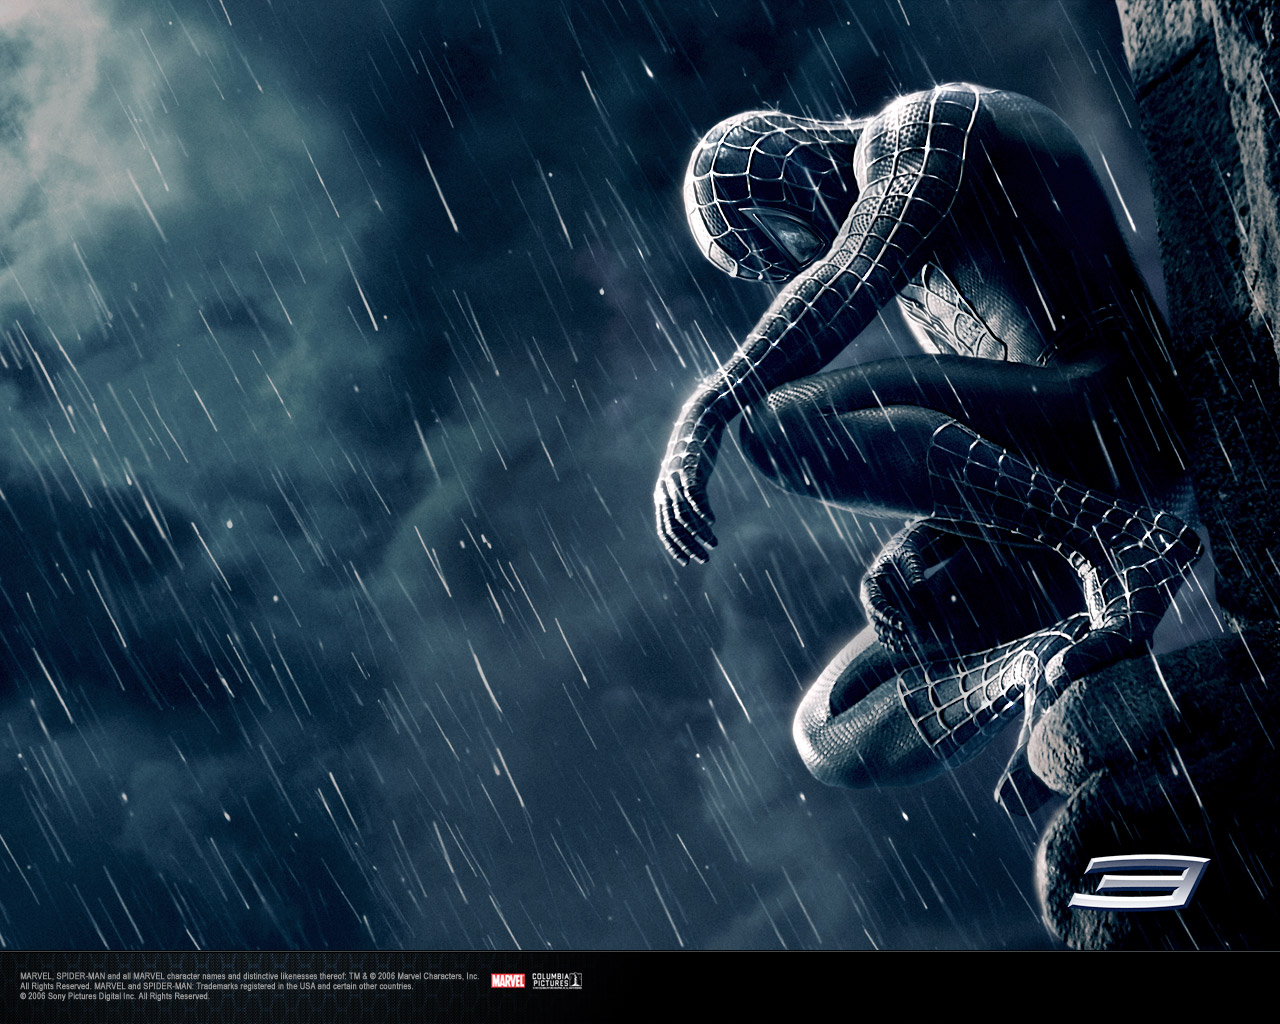 http://4.bp.blogspot.com/-nSnRwDZSGIQ/TZa1000_fUI/AAAAAAAABfU/vIiN7HenUkU/s1600/Spiderman3_in_black.jpg